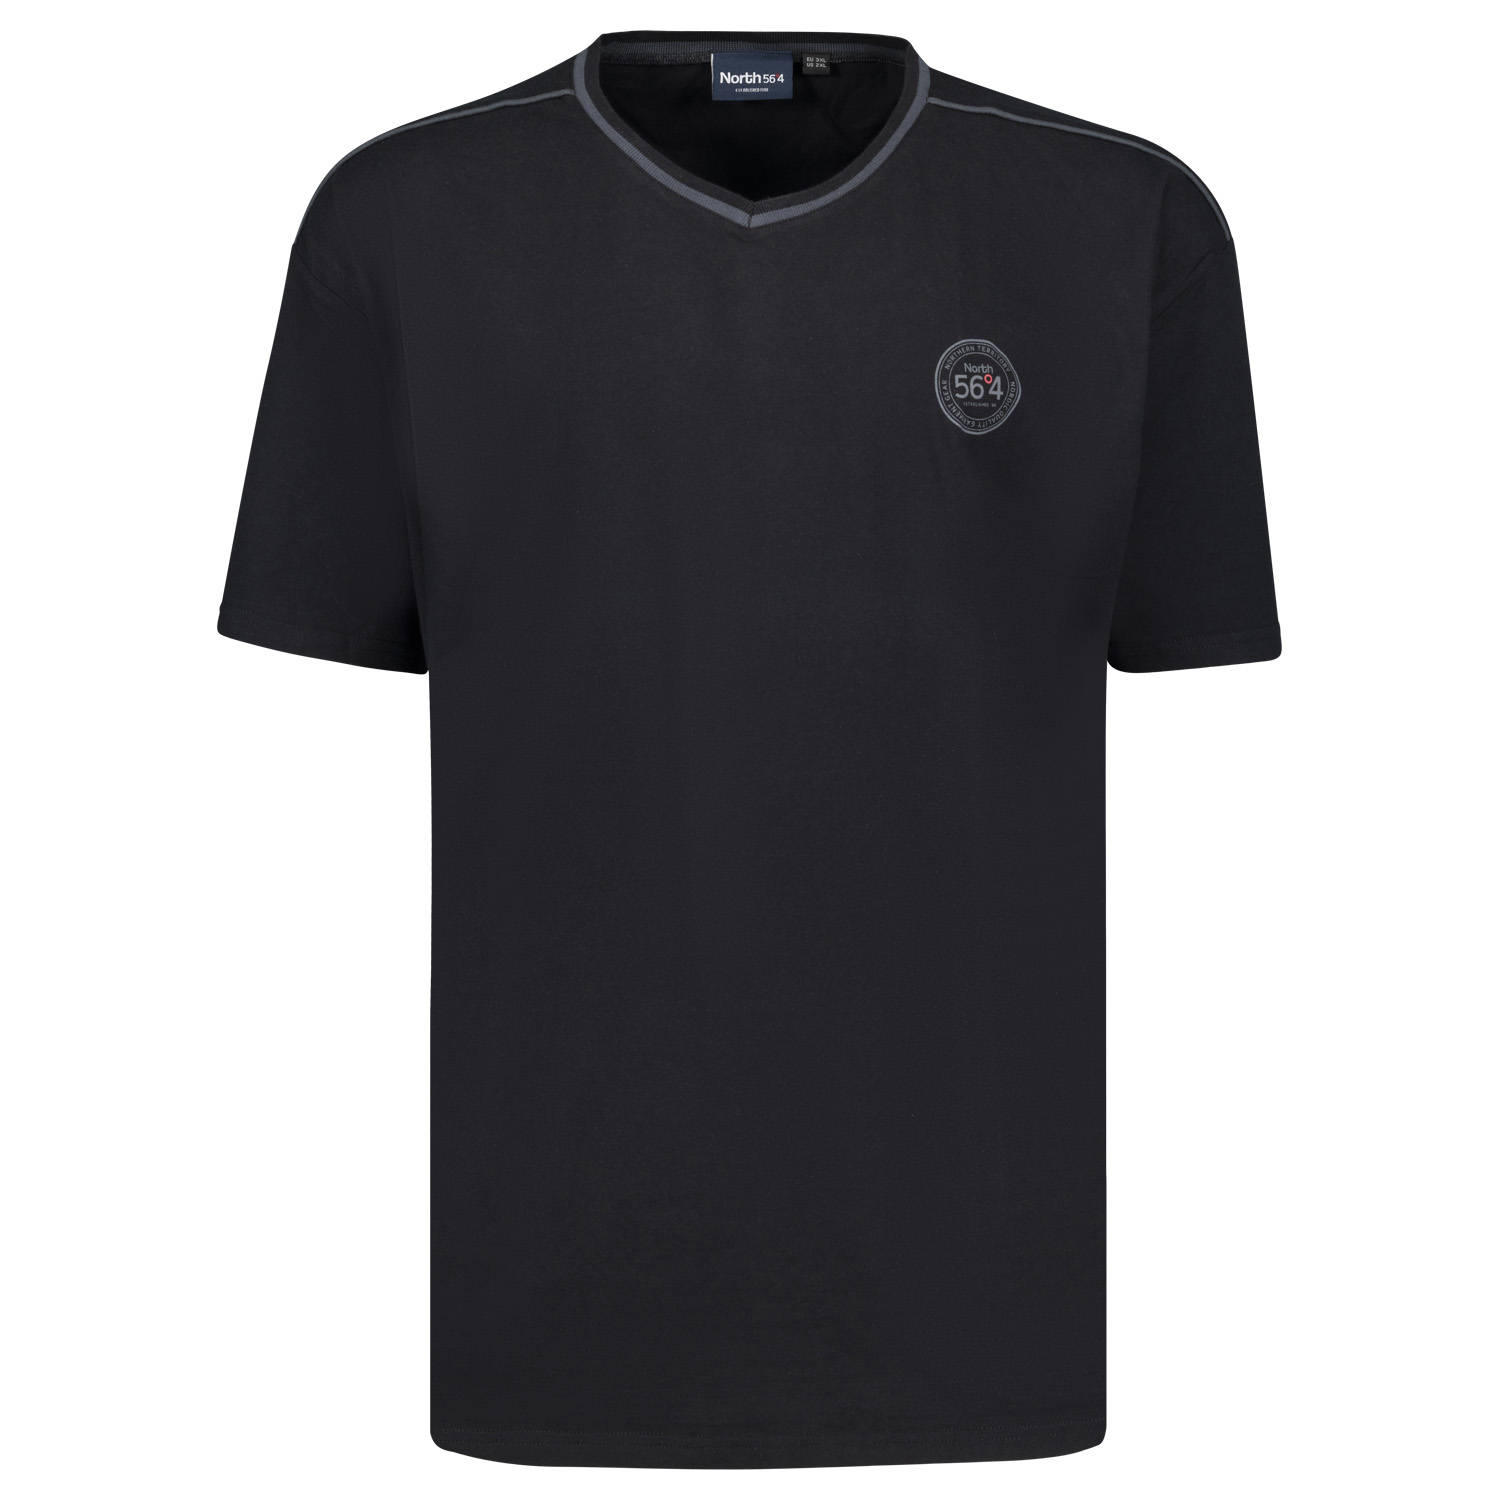 Herren T-Shirt von North 56°4 in Schwarz große Größen von 3XL - 8XL